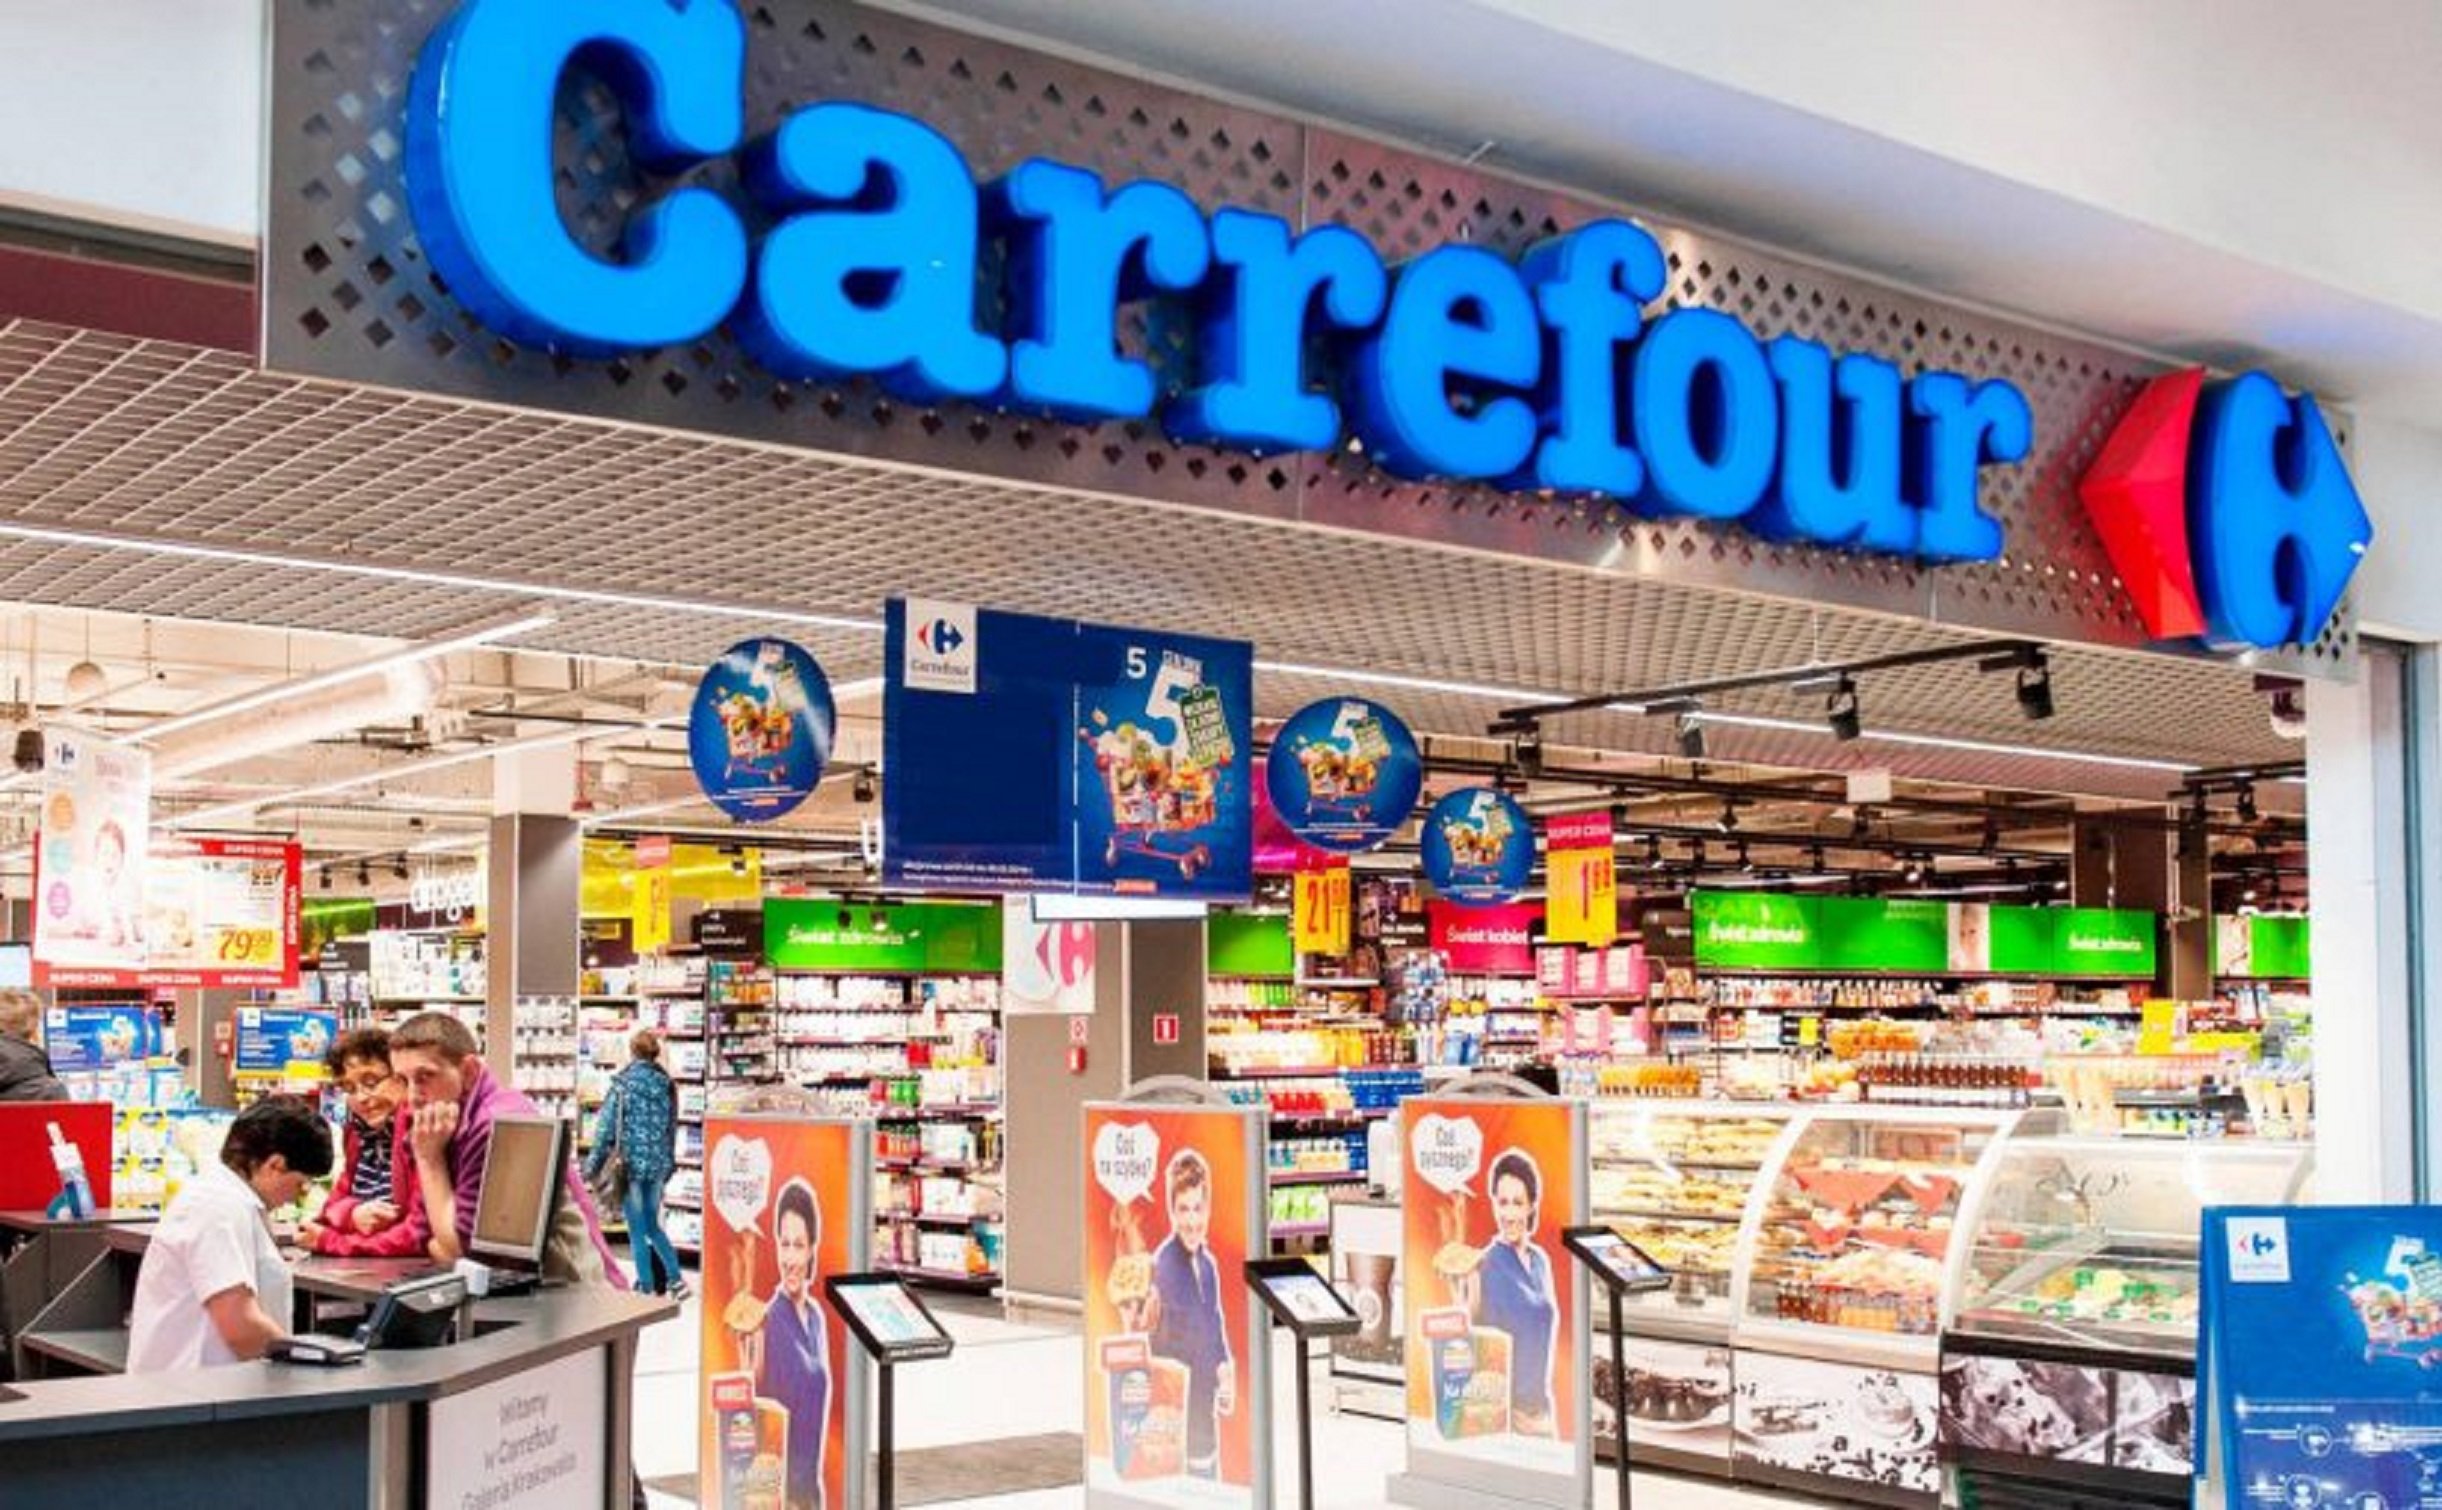 Vuelve el 3x2 de Carrefour con productos de marca al mejor precio